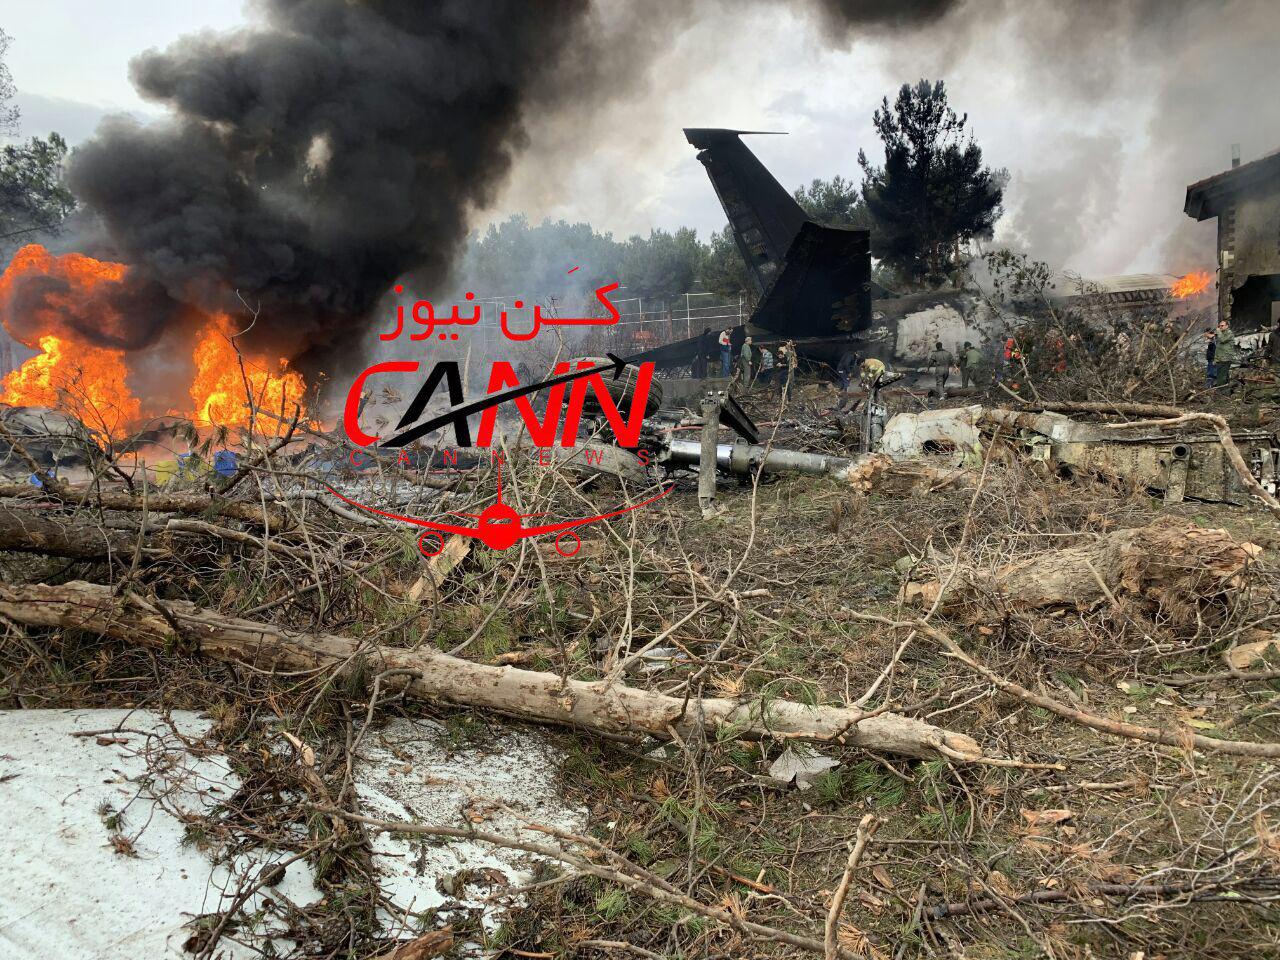 سقوط هواپیما در نزدیک کرج (به روز می شود)